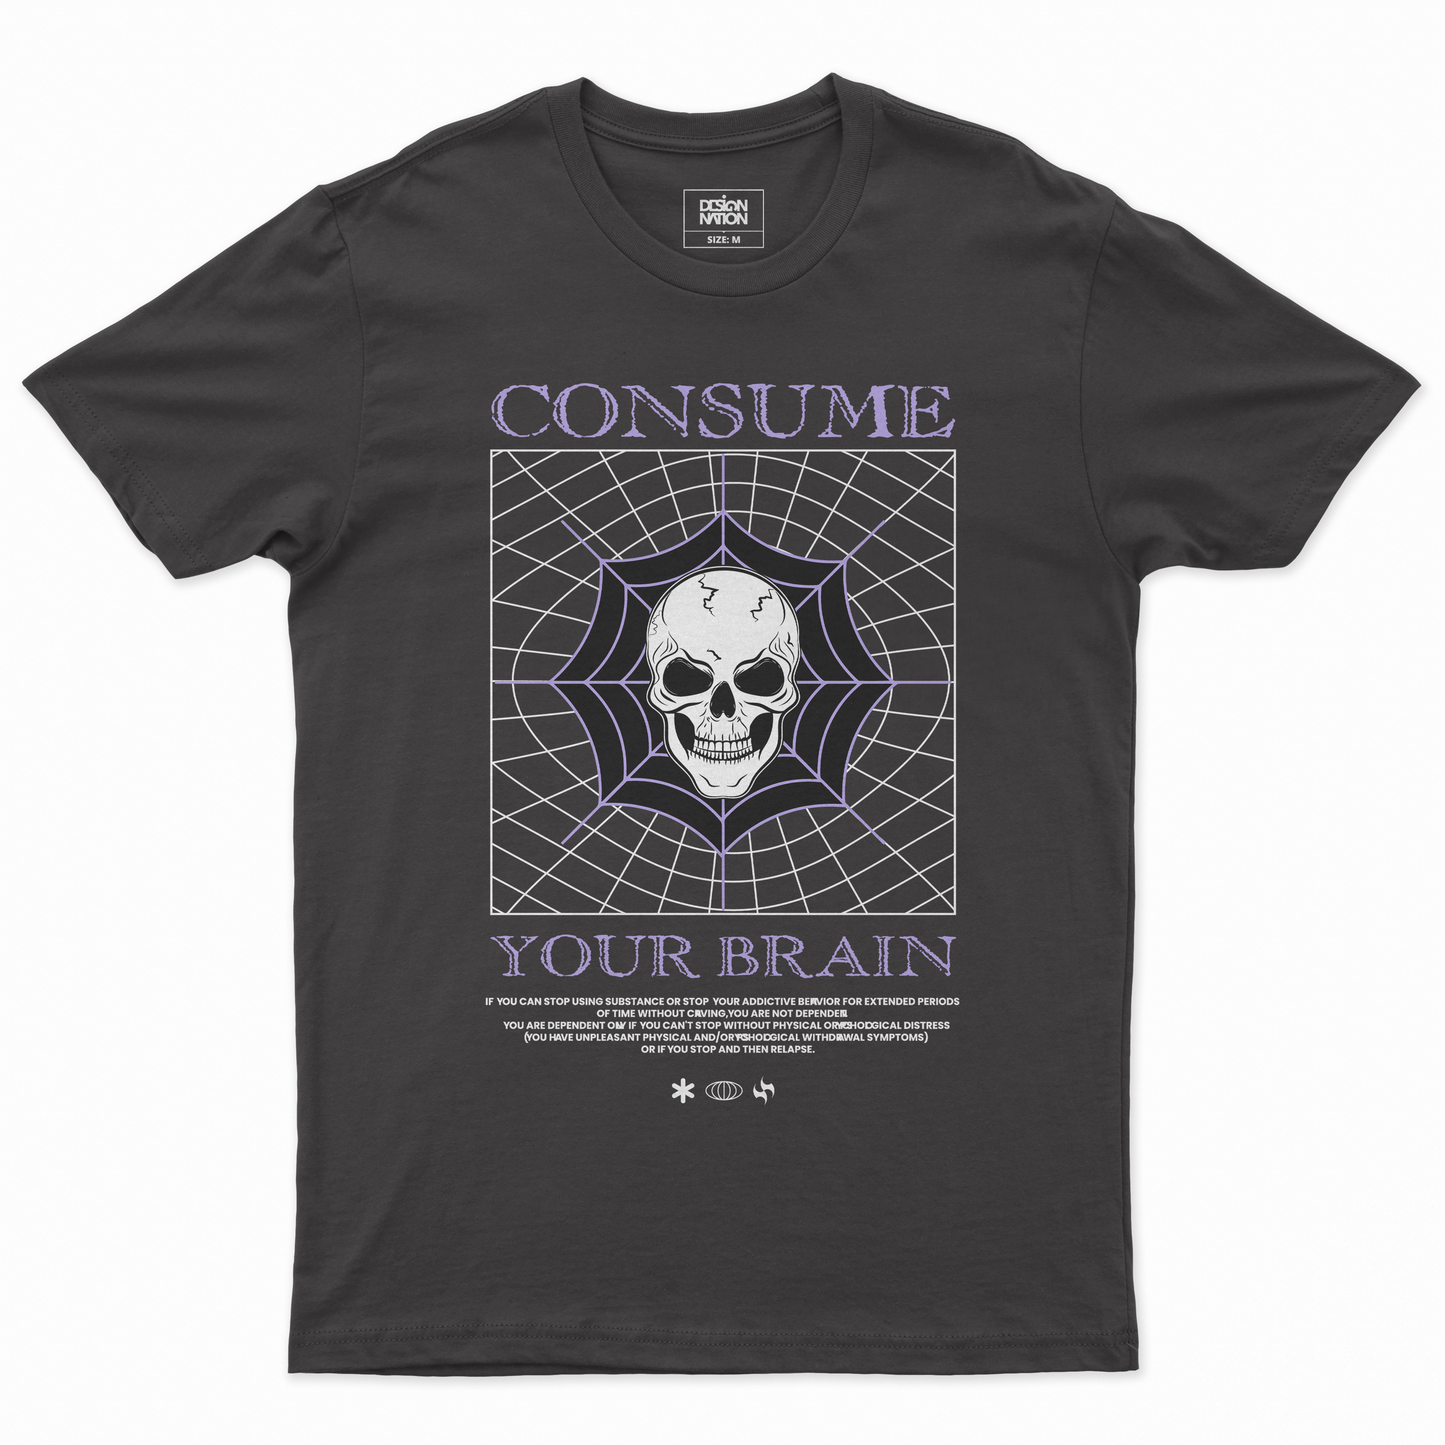 Consume your brain Póló